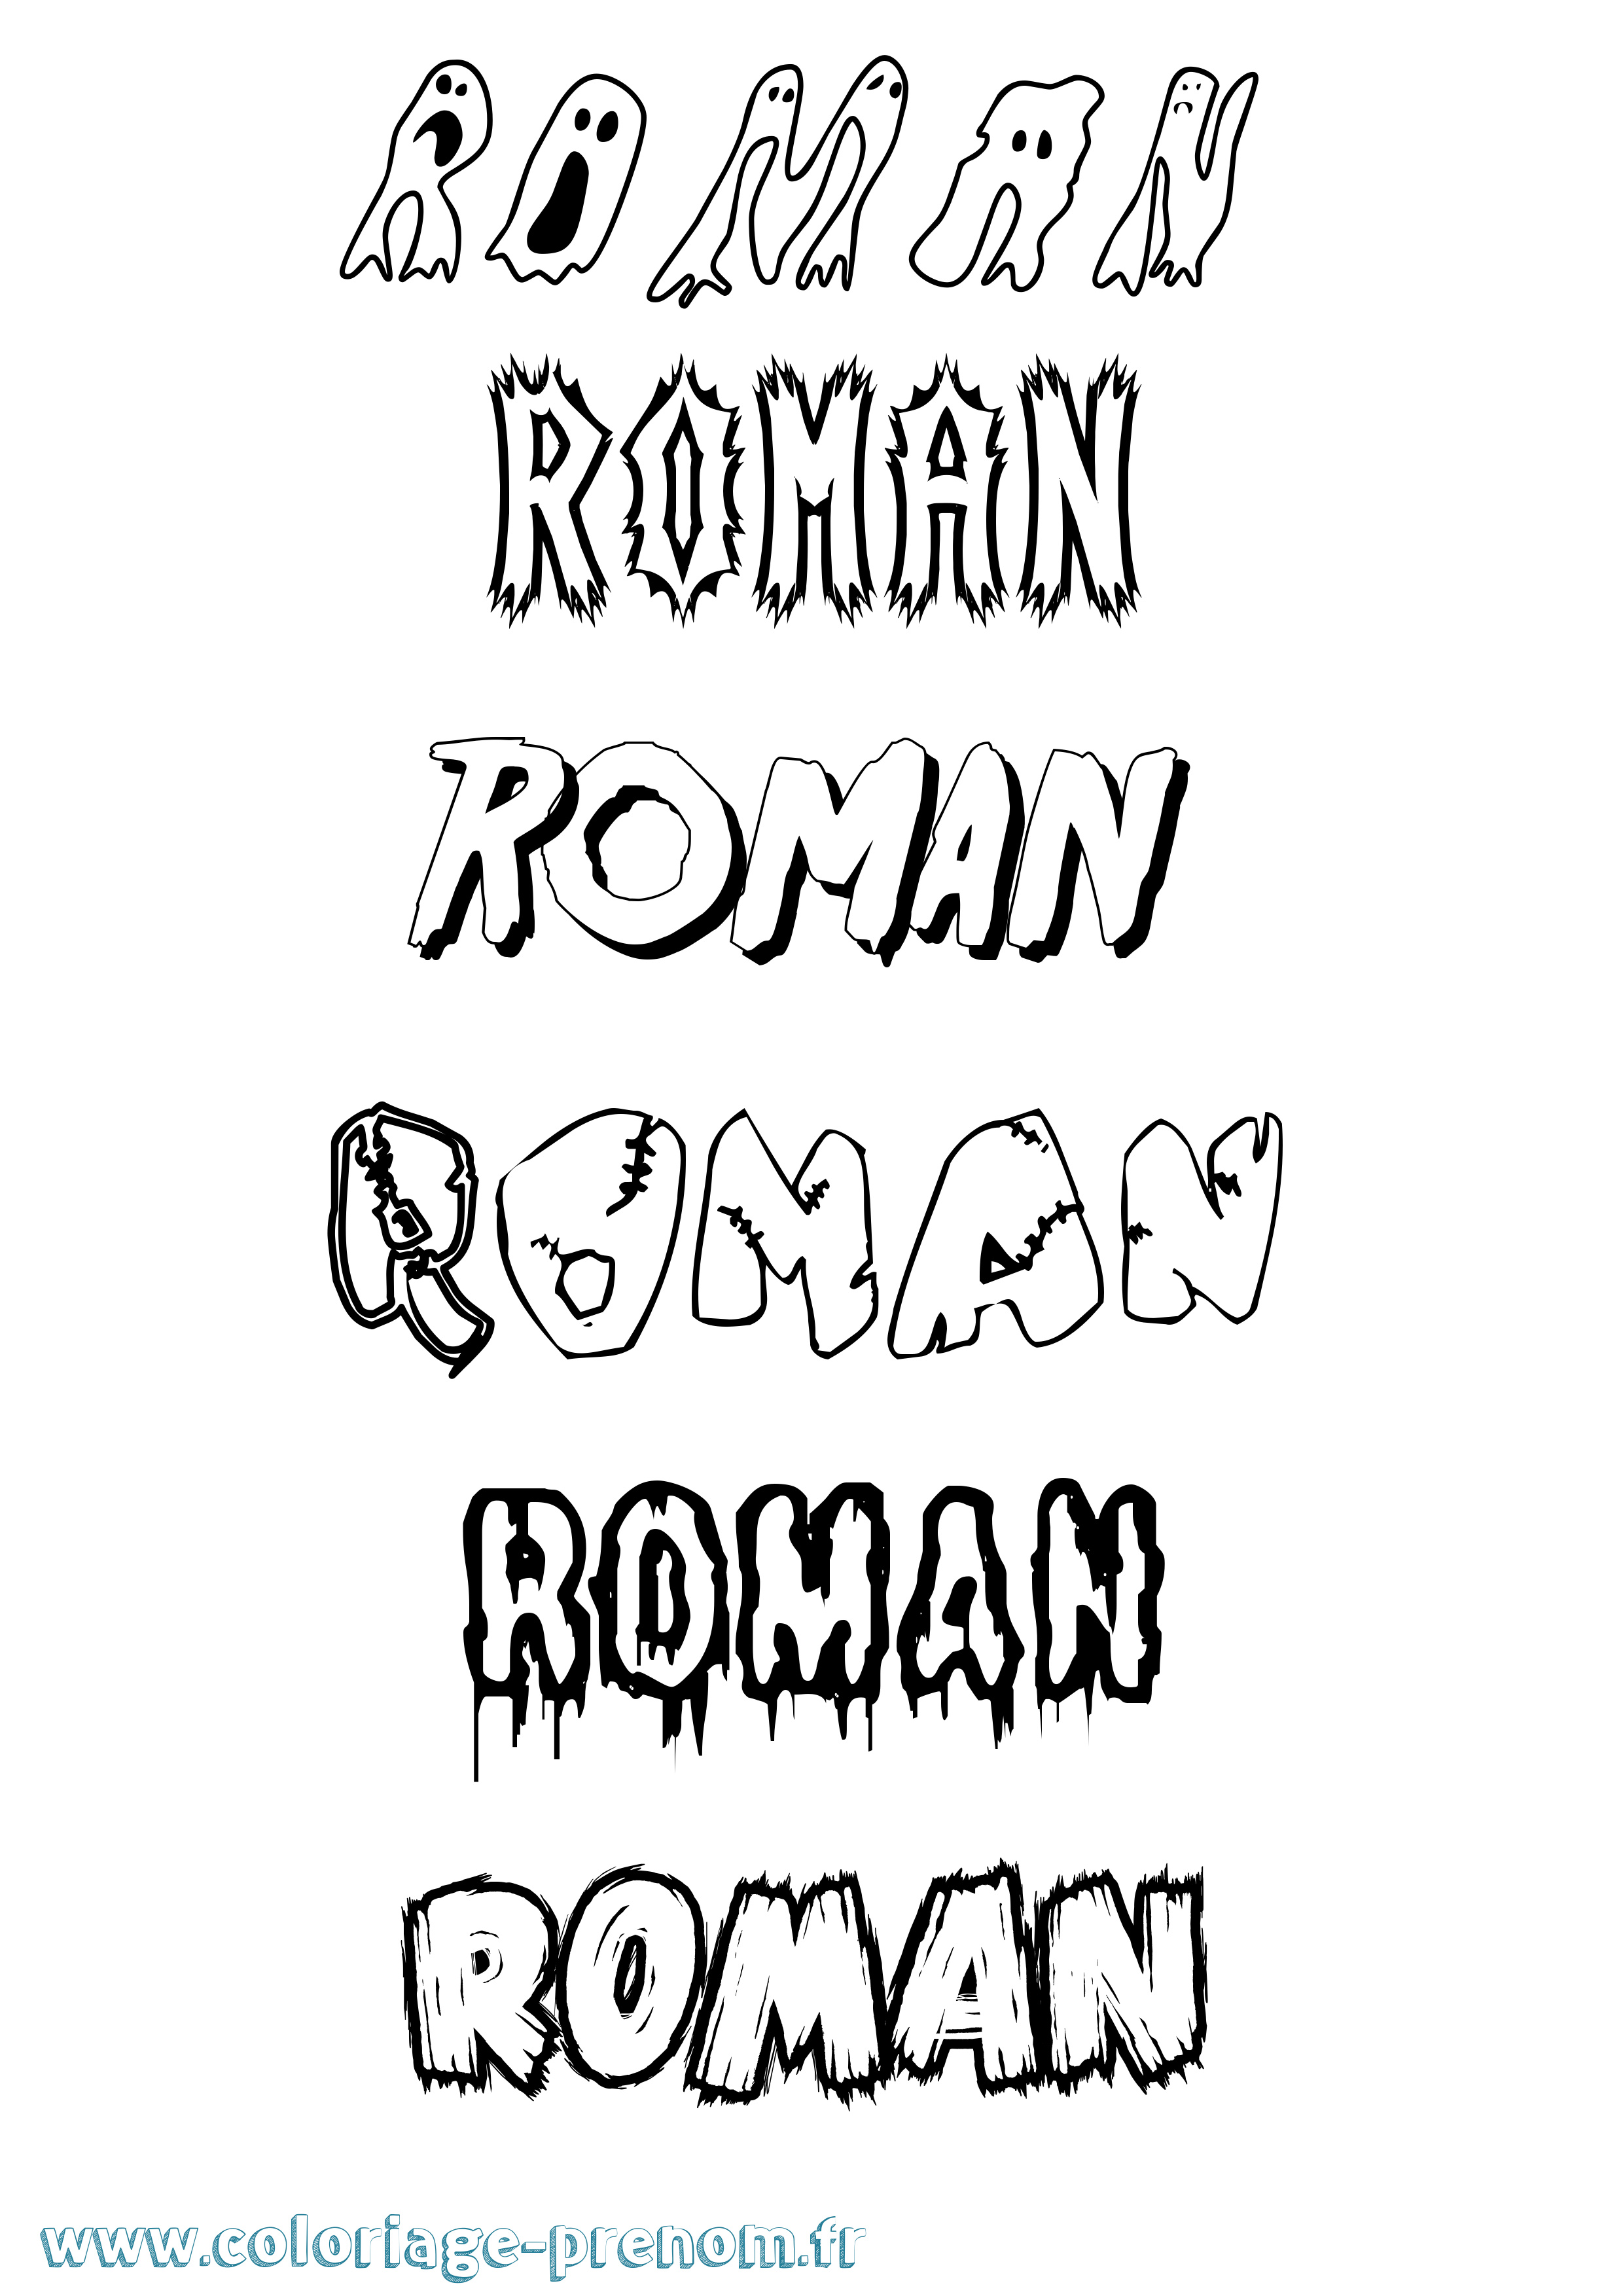 Coloriage prénom Roman Frisson